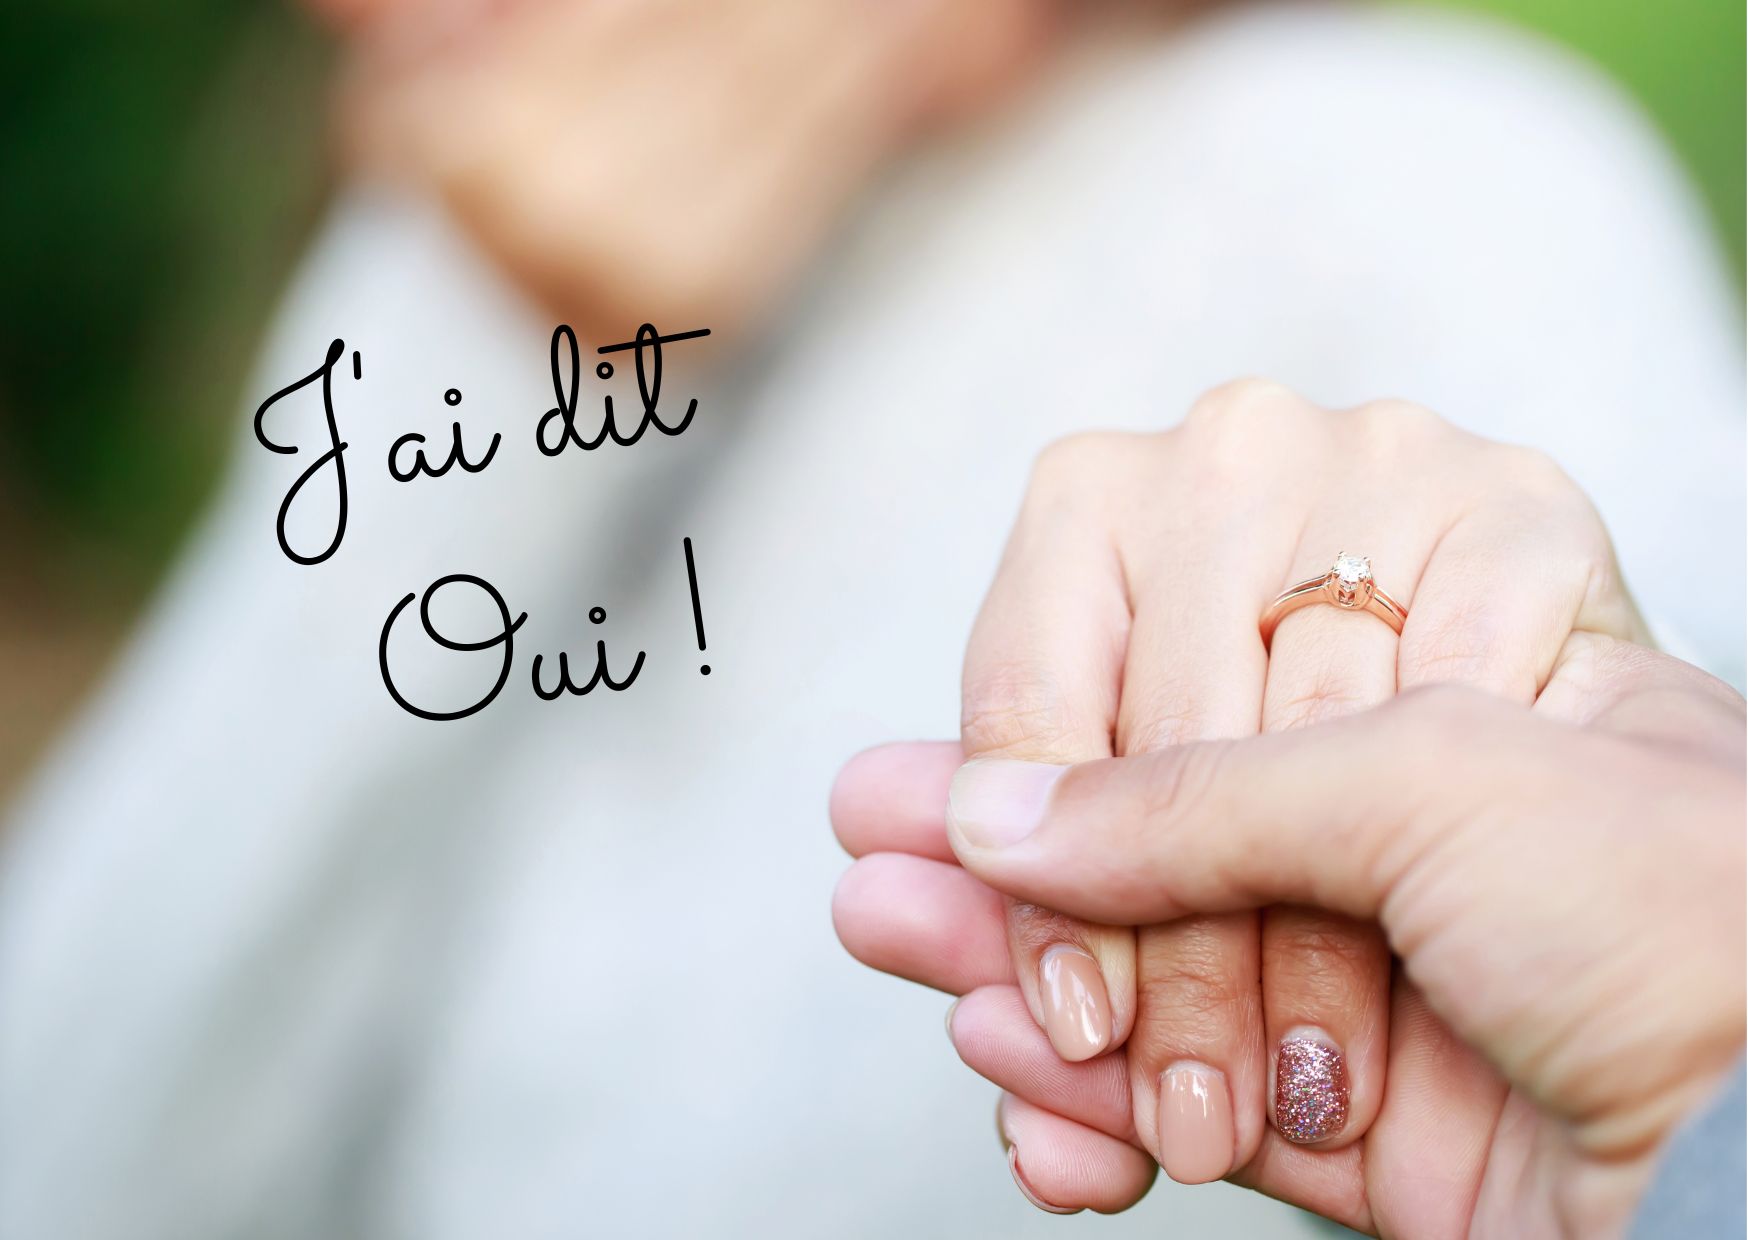 Annoncer la nouvelle de vos fiançailles à votre famille